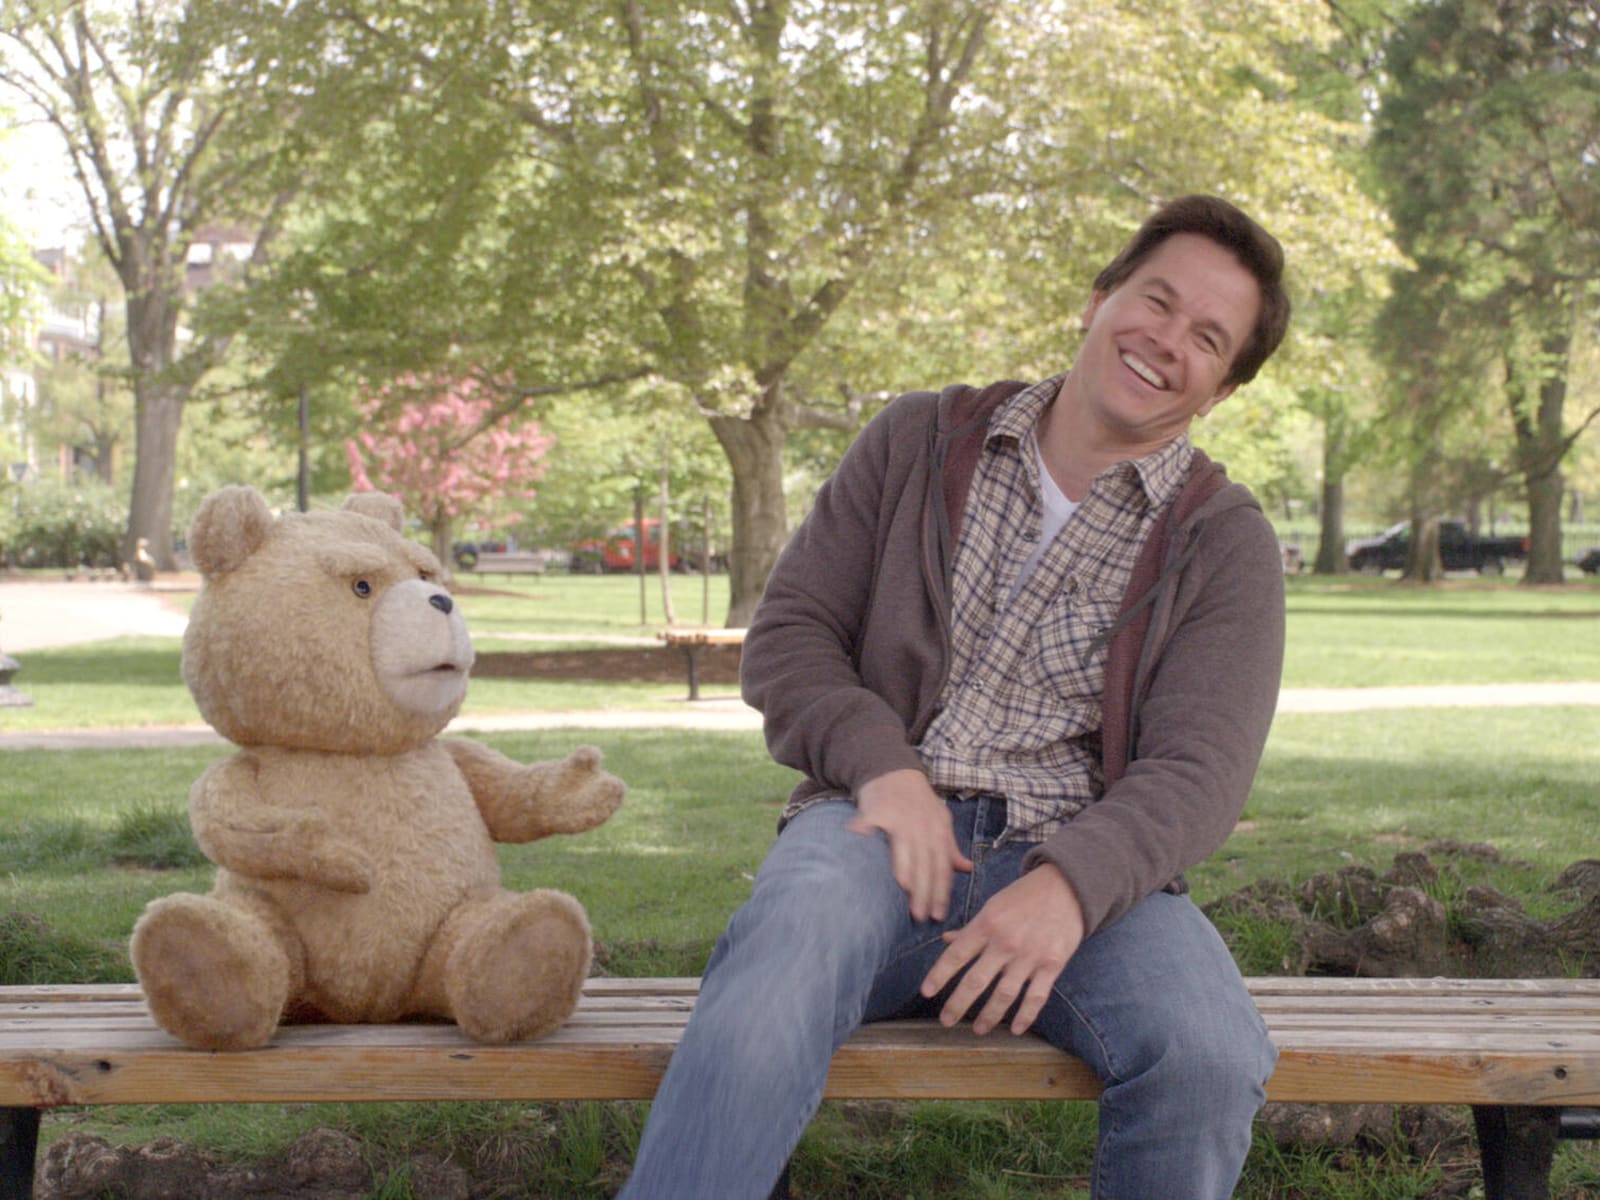 Teddy Bear (TV Movie 2022) - IMDb